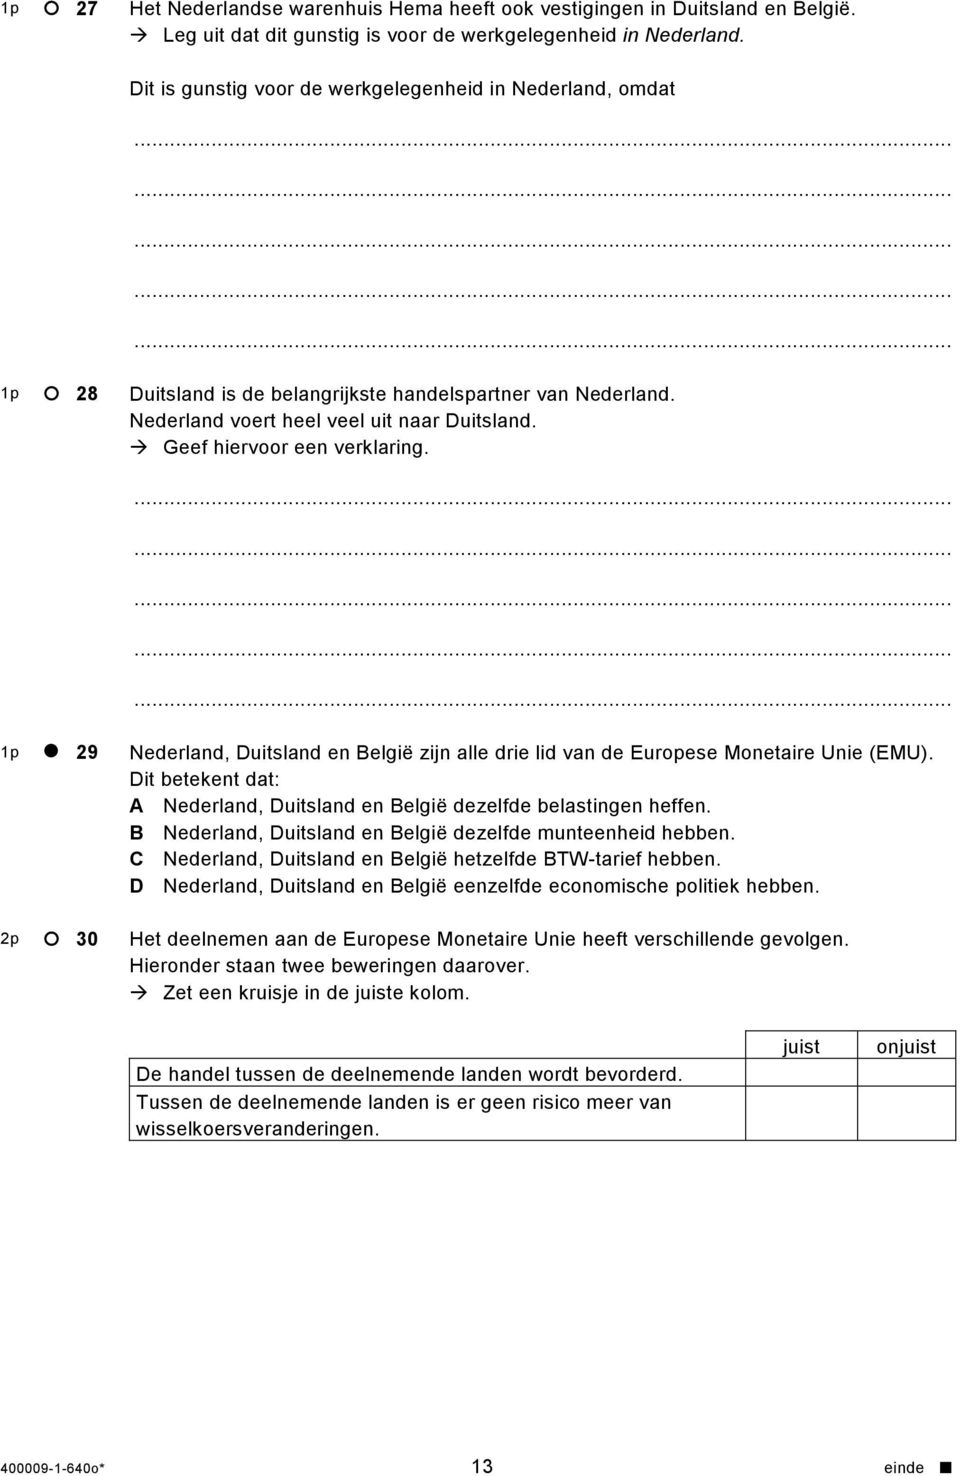 2p 29 30 Nederland, Duitsland en België zijn alle drie lid van de Europese Monetaire Unie (EMU). Dit betekent dat: A Nederland, Duitsland en België dezelfde belastingen heffen.